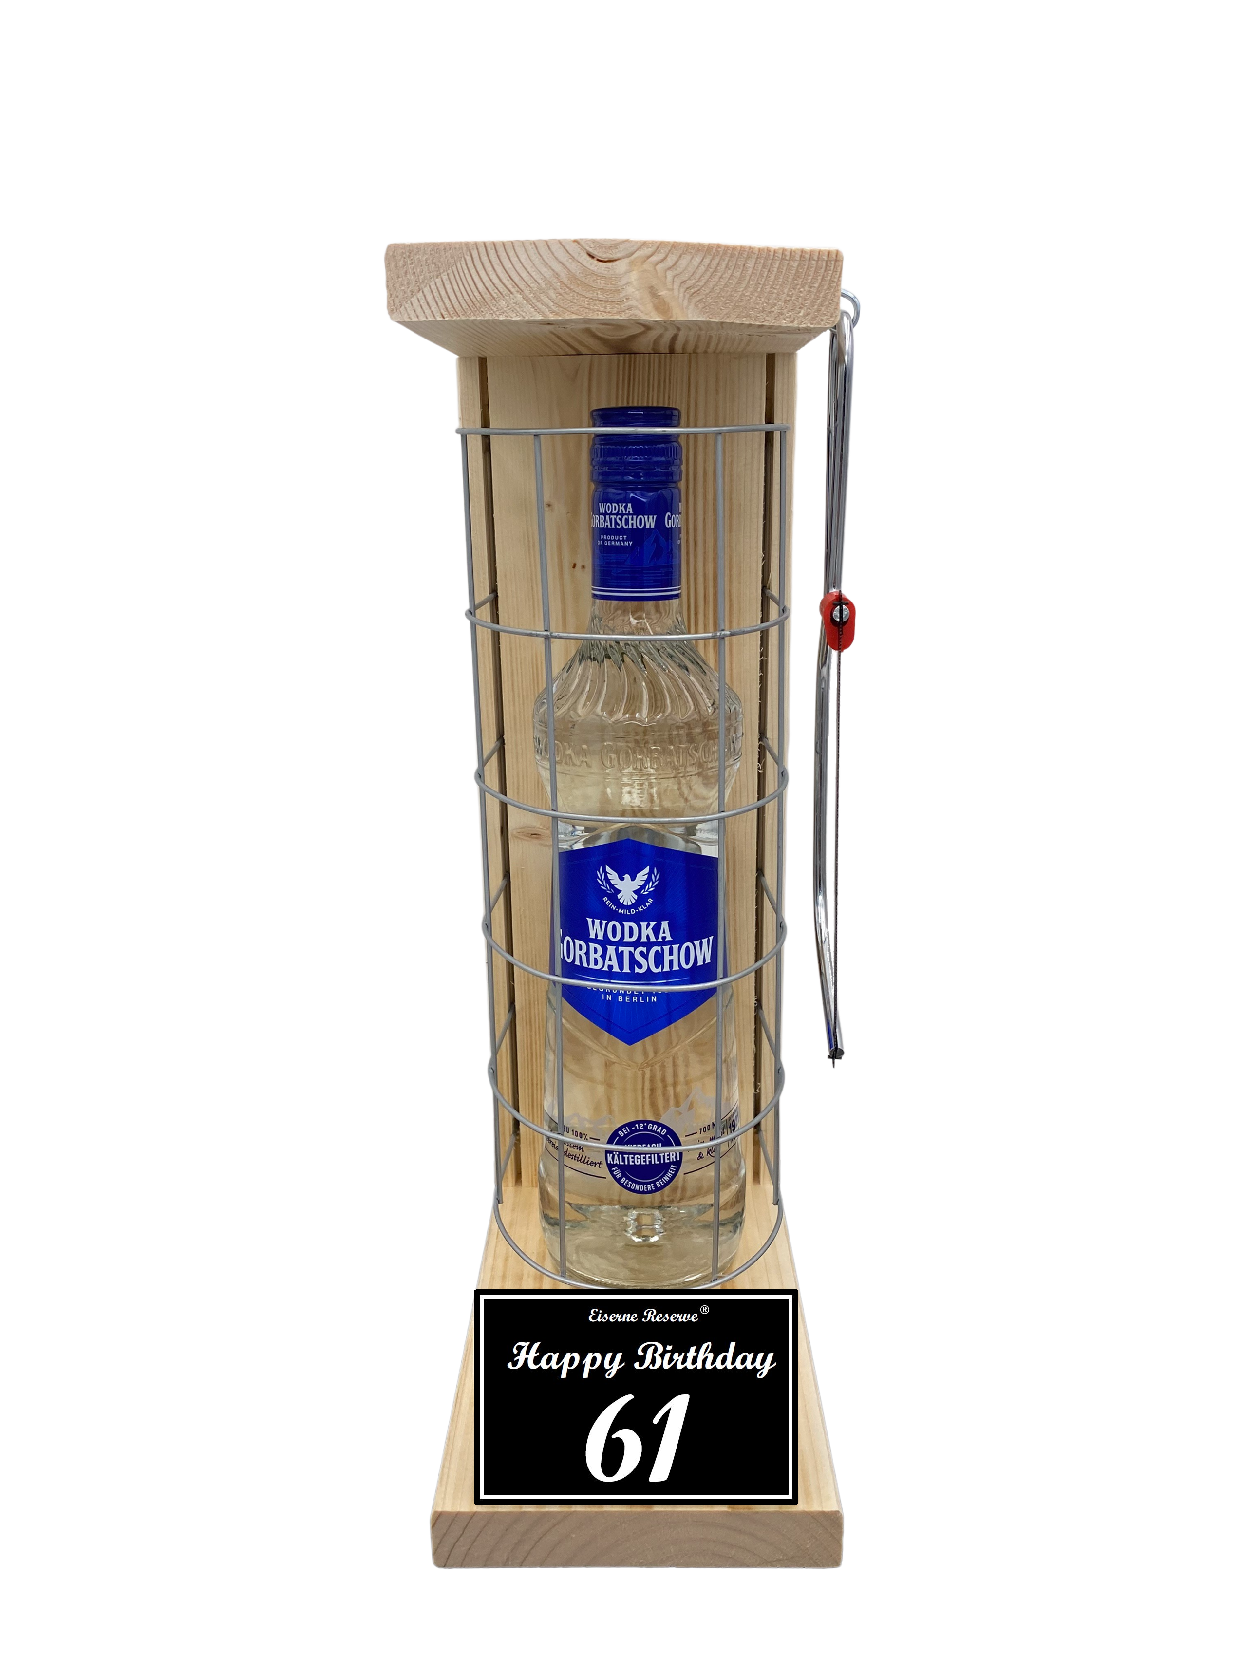 Wodka Geschenk zum 61 Geburtstag - Eiserne Reserve Gitterkäfig